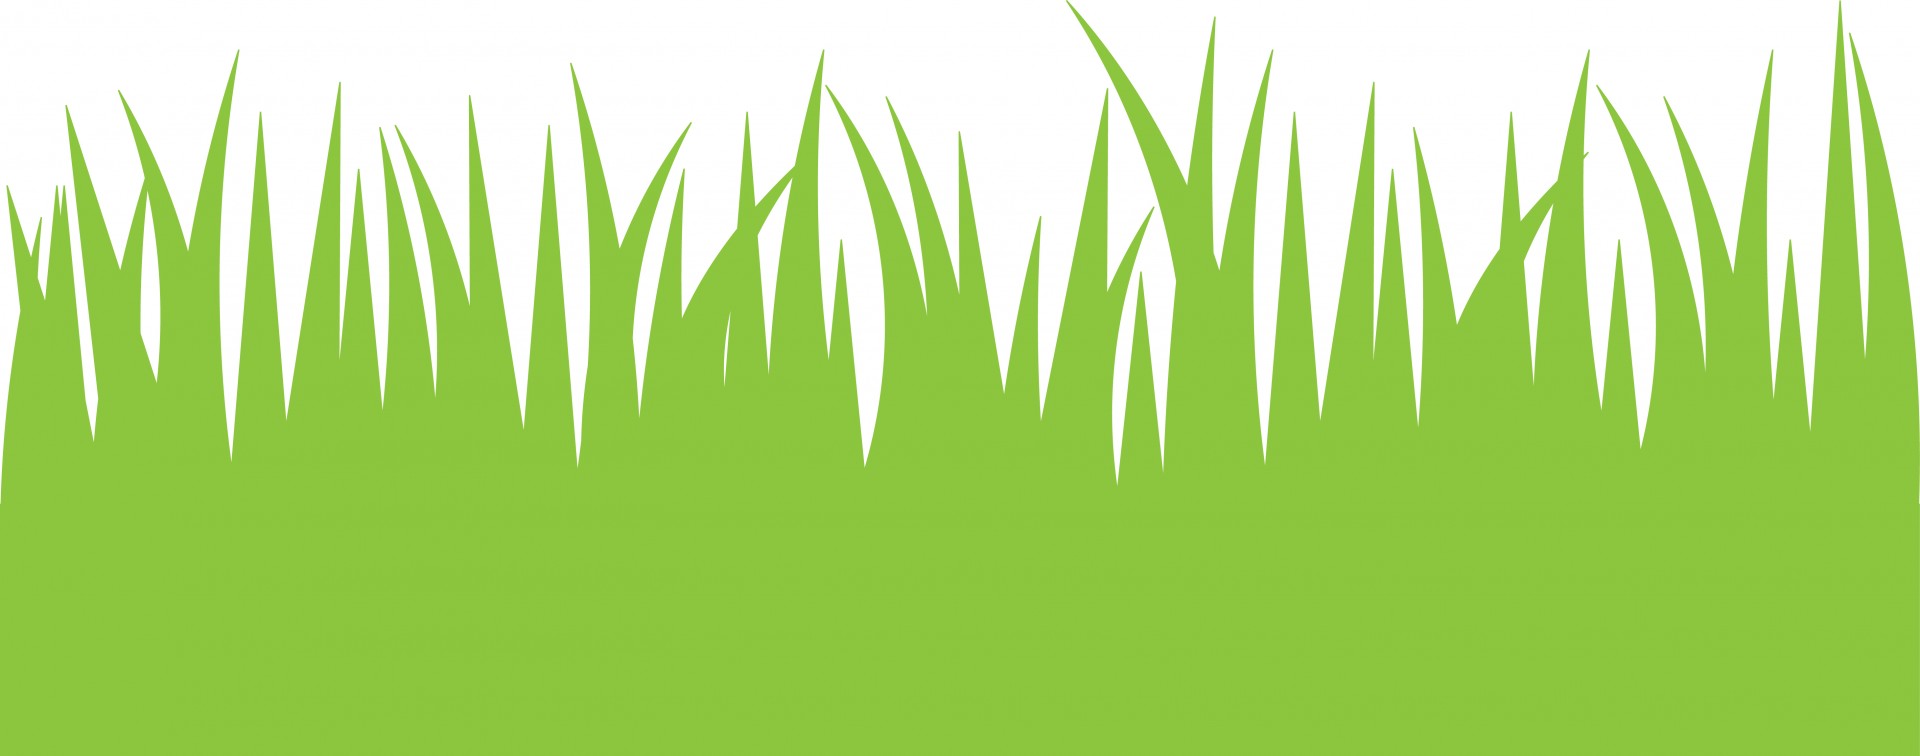 Green Grass Clipart - Grass Border Clip Art